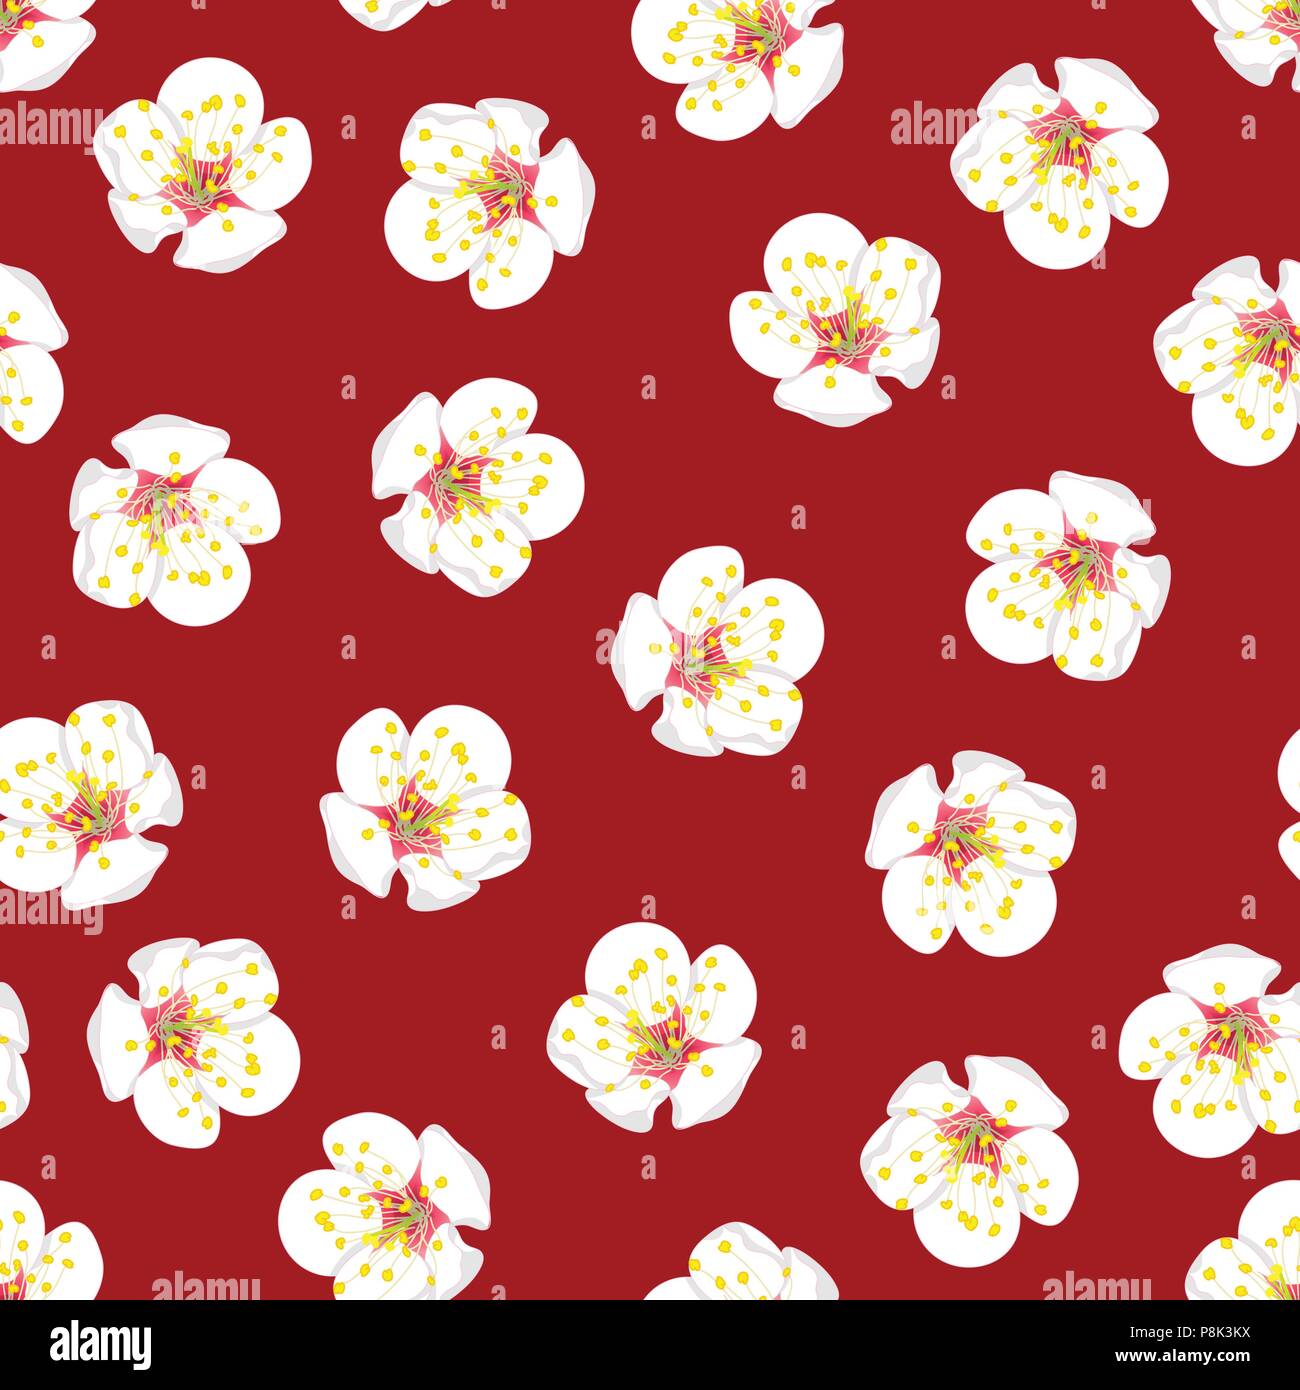 White Plum Blossom Flower Seamless on Red Background. Vector Illustration. Stock Vector